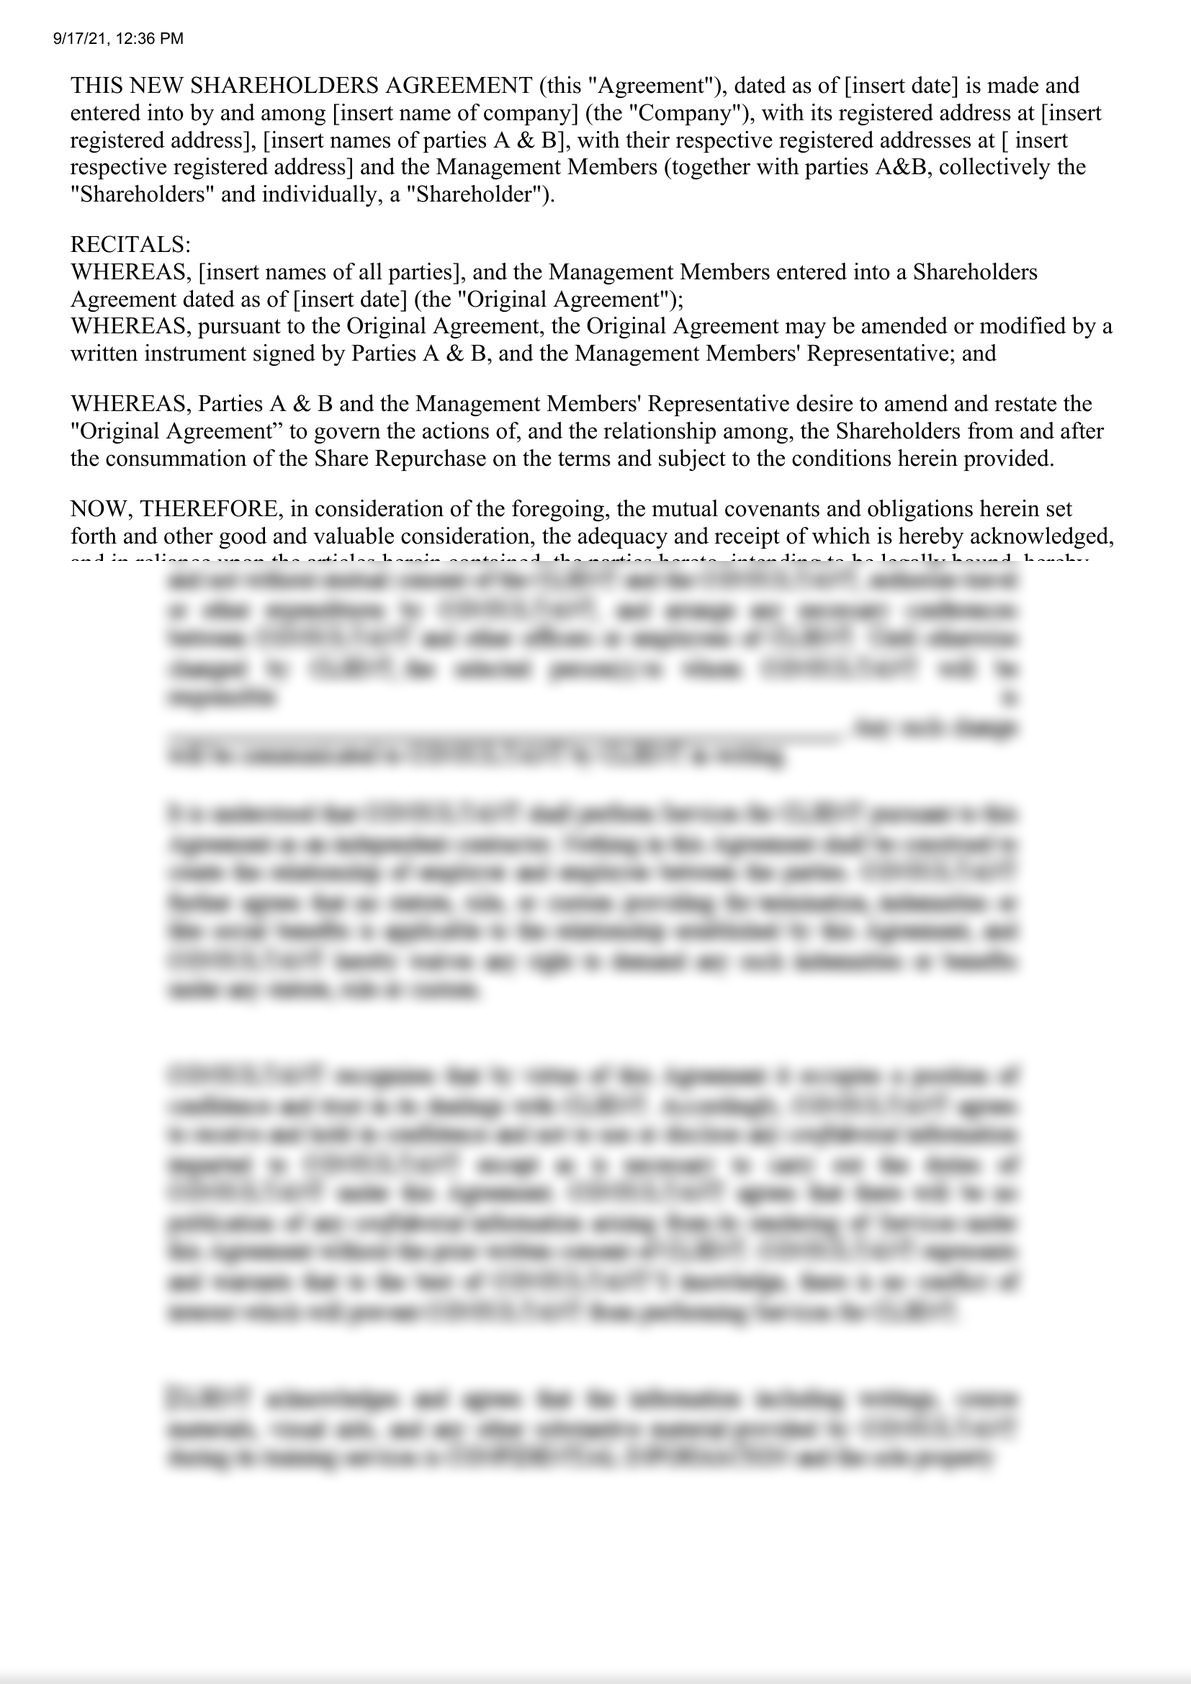 Amended Shareholders Agreement-0